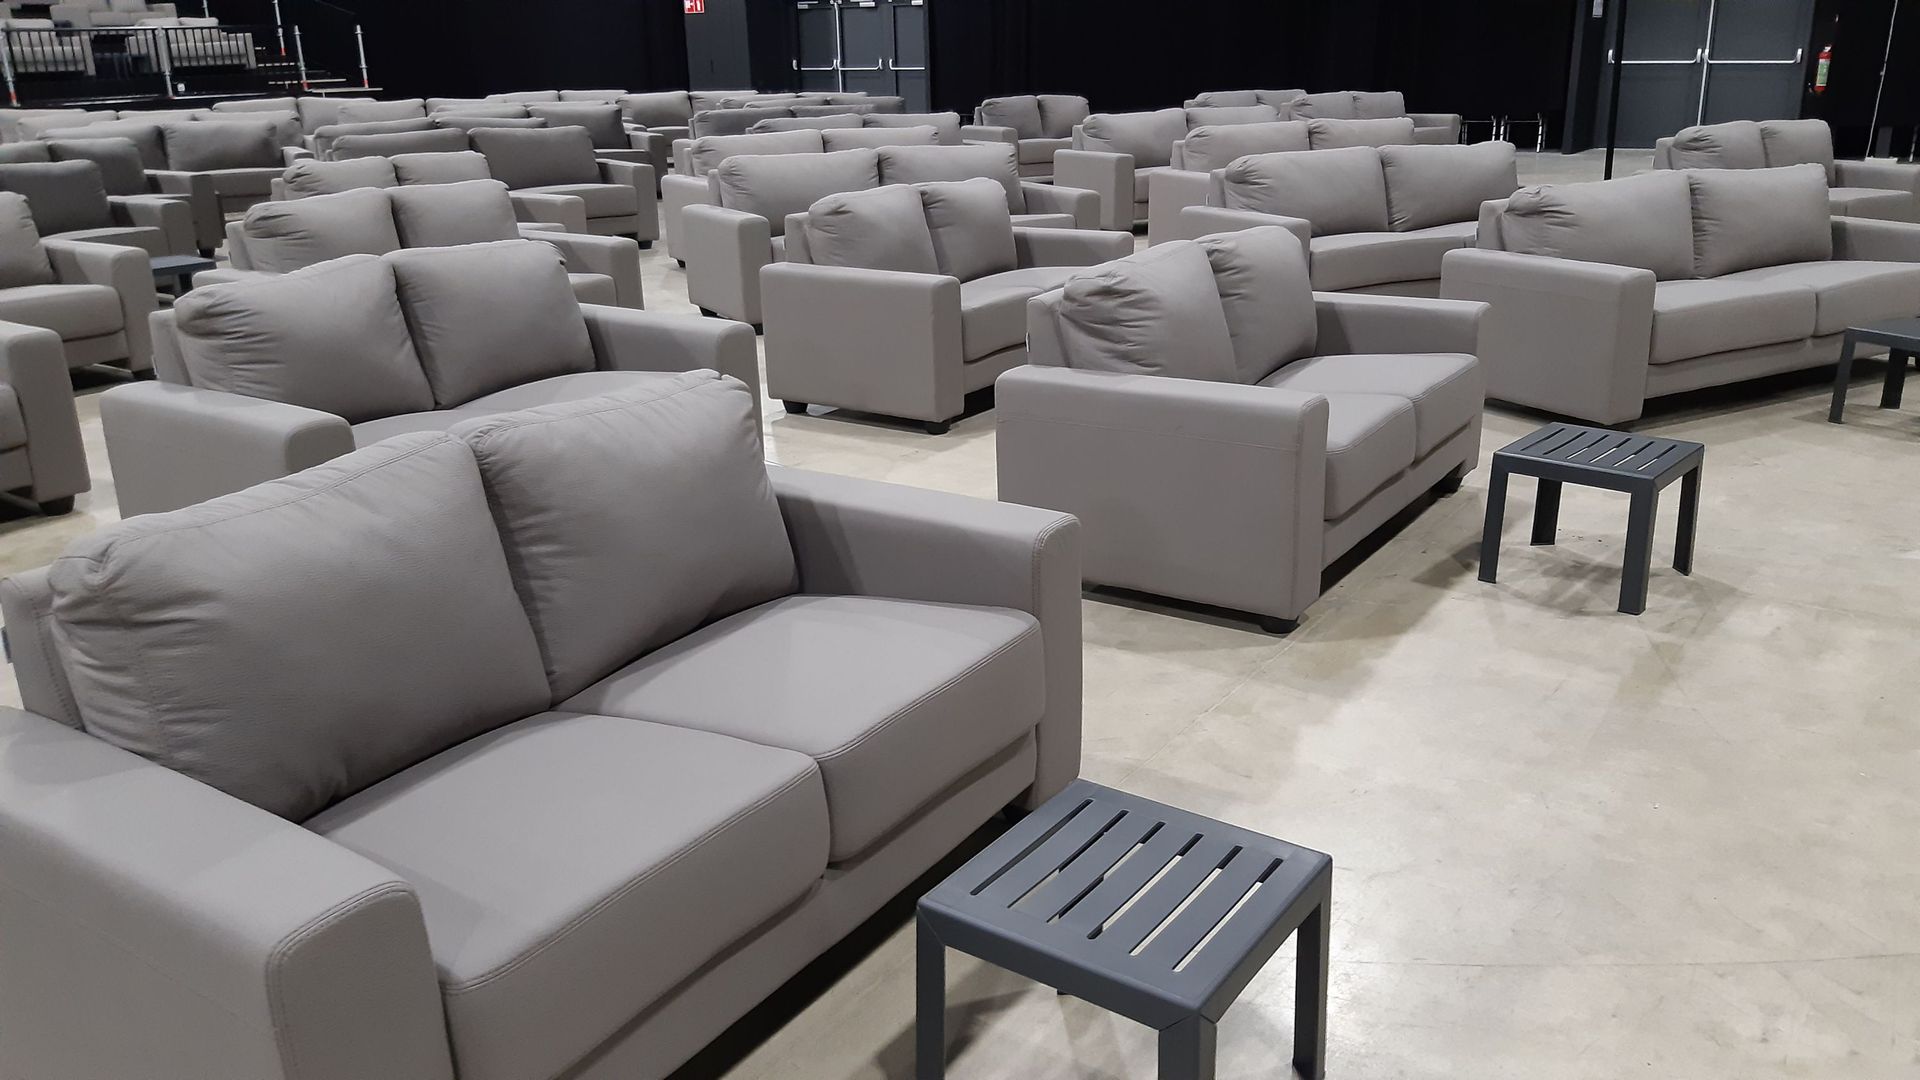 Le public appréciera les films et spectacles dans de confortables canapés accompagnés de tables basses